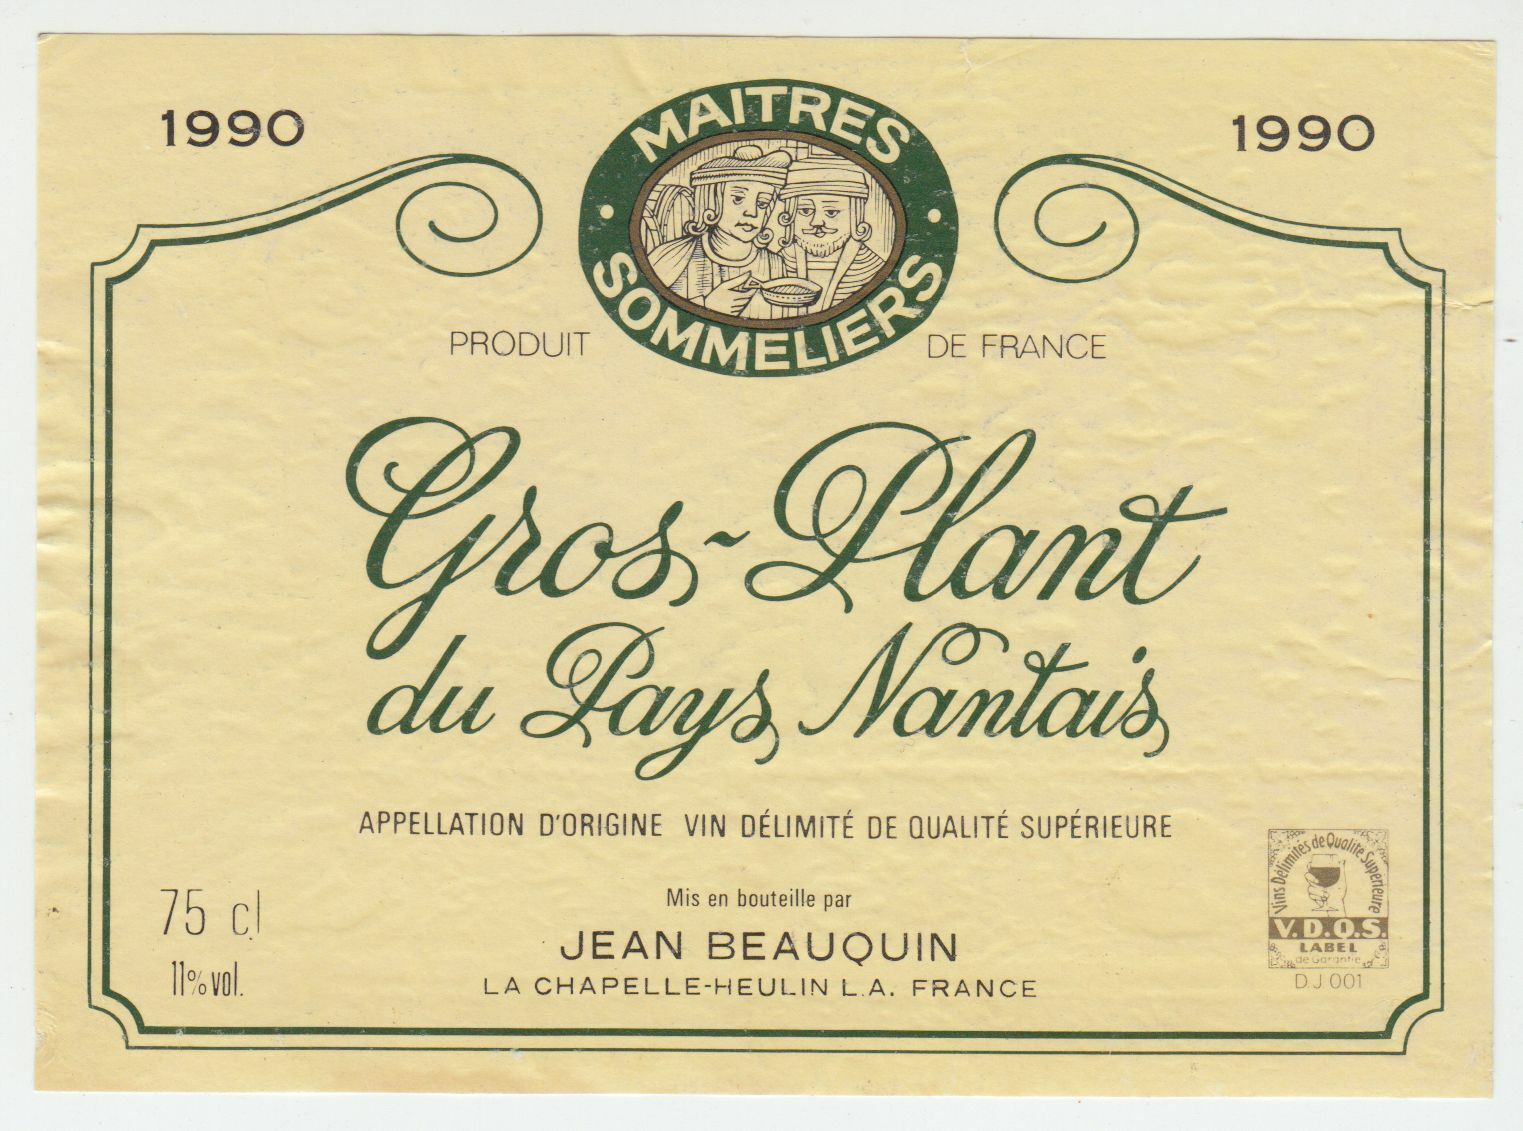 ETIQUETTE DE VIN GROS PLANT DU PAYS NANTAIS 1990 MAITRES SOMMELIERS 124511871018